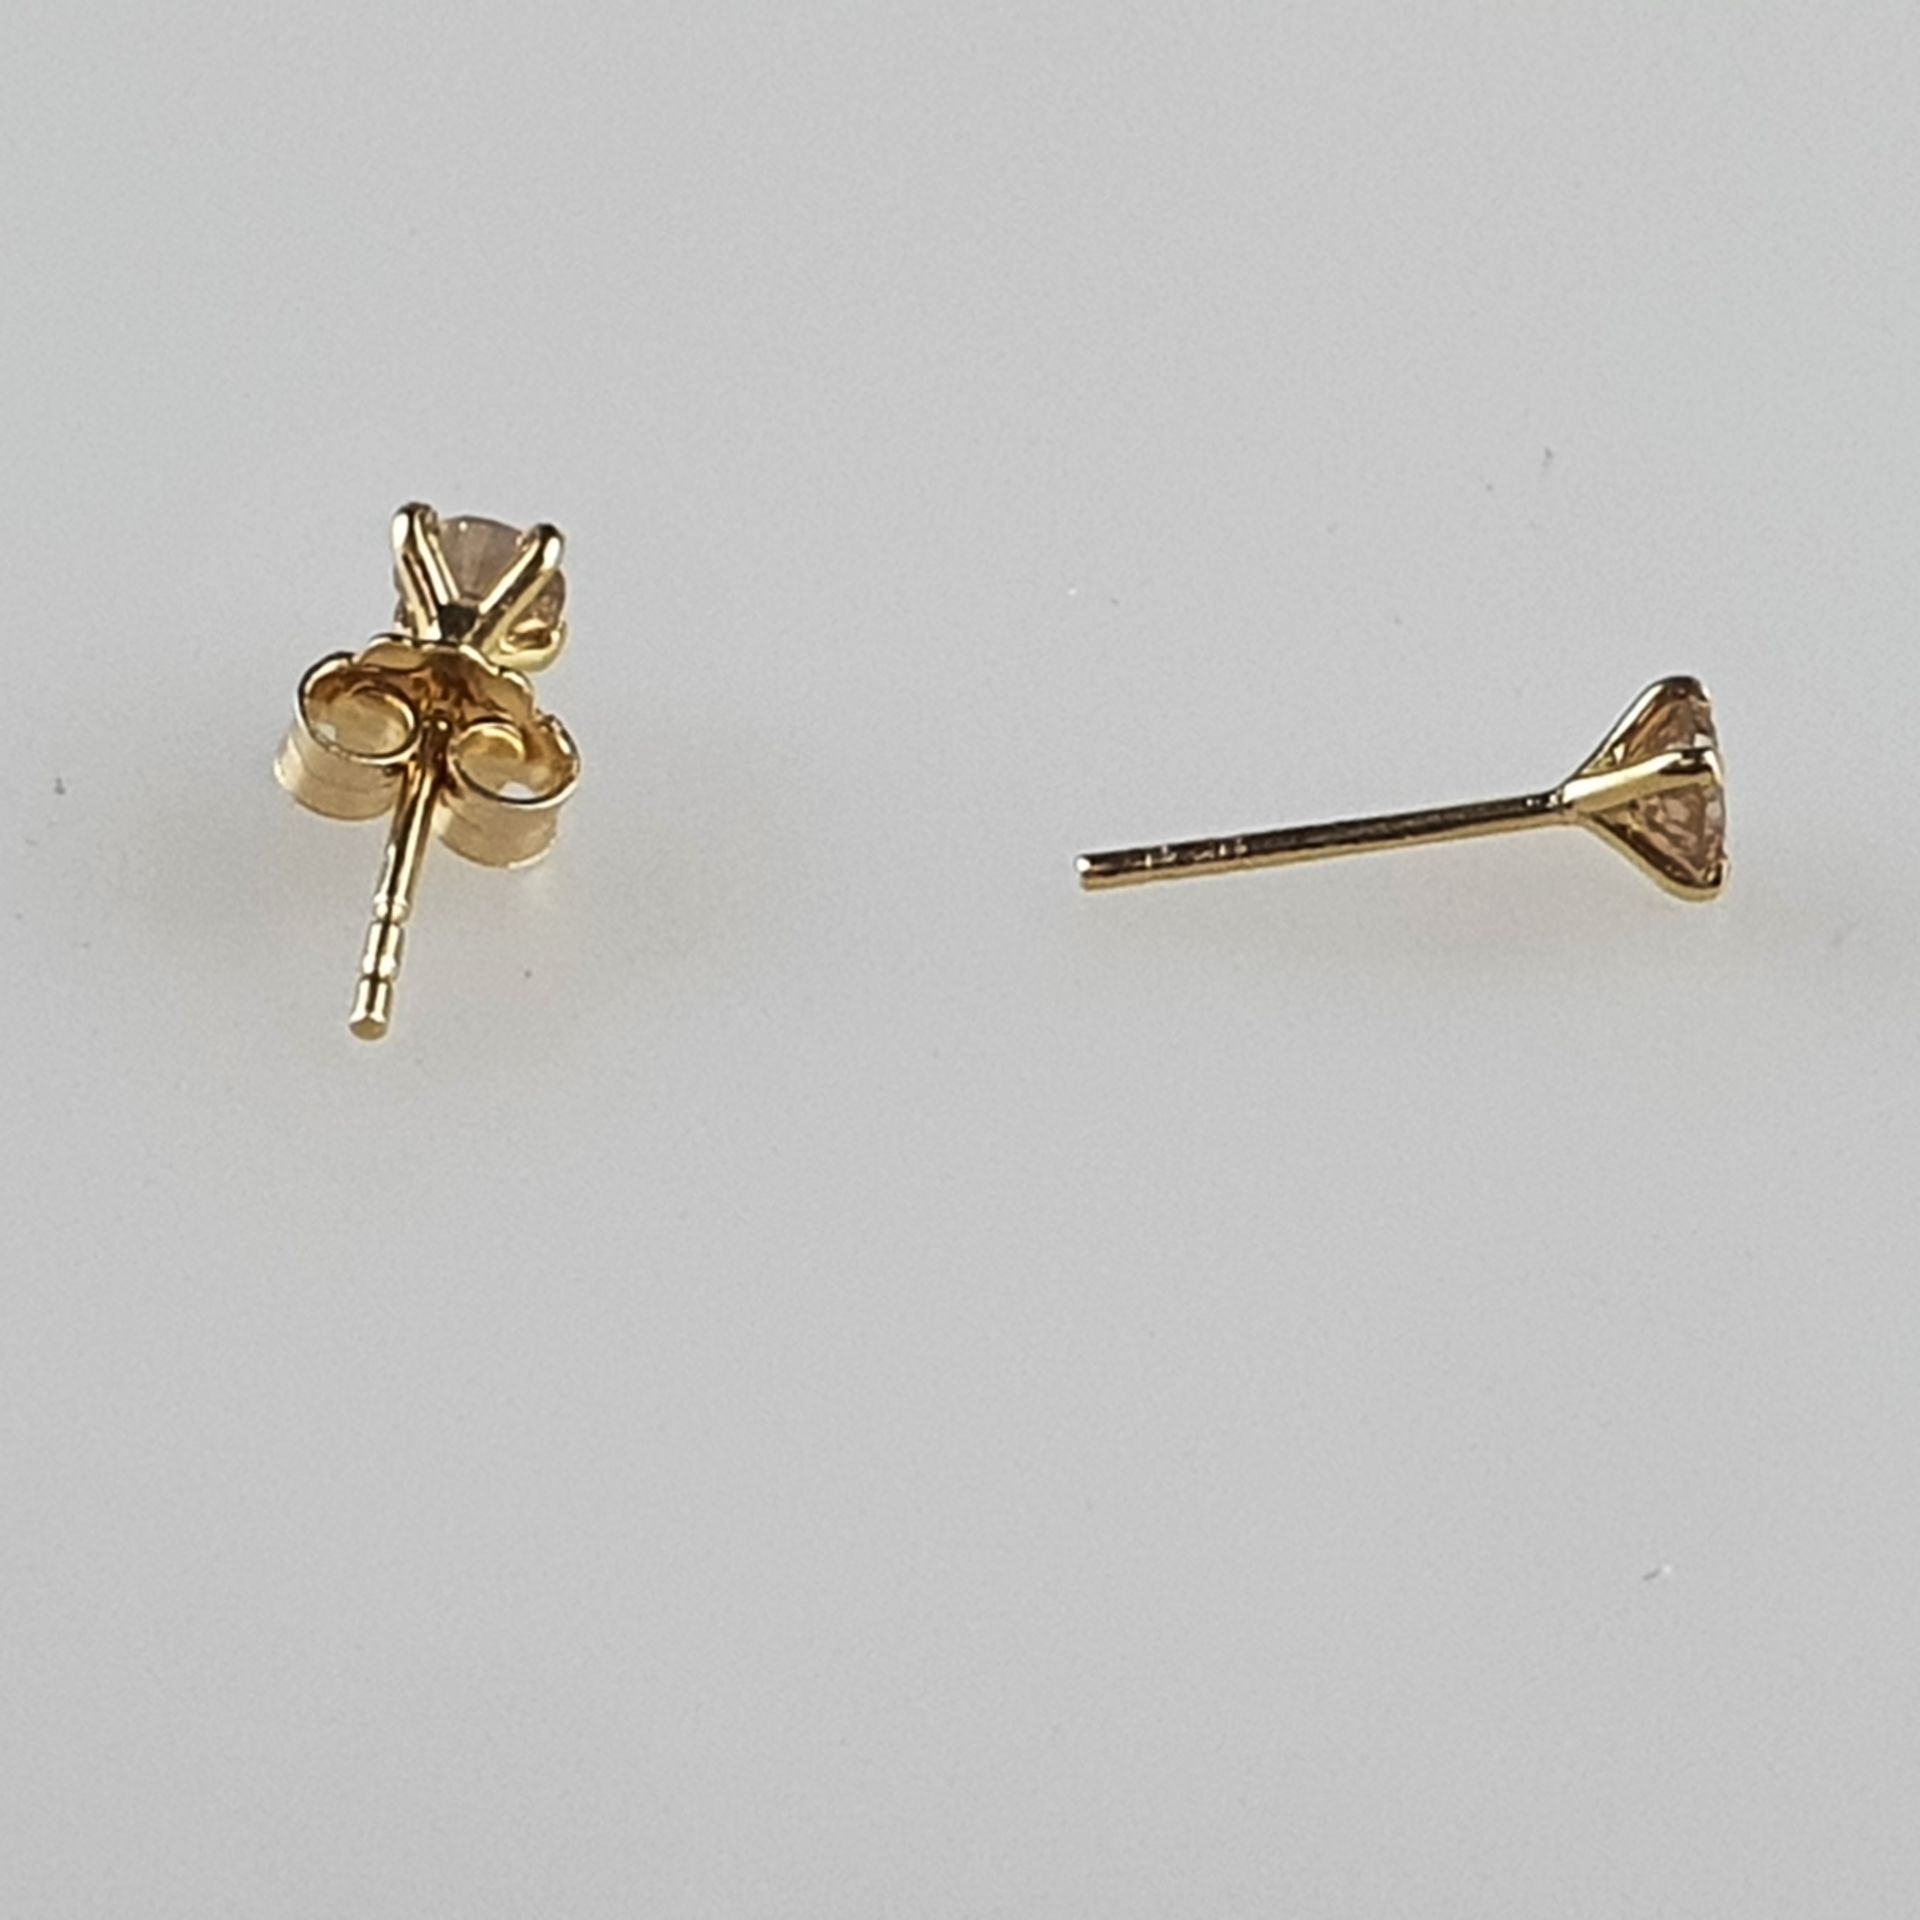 Ein Paar Diamant-Ohrstecker - Gelbgold 750/000, Sicherungen gestempelt, jeweils besetzt mit 1 Diama - Bild 3 aus 4